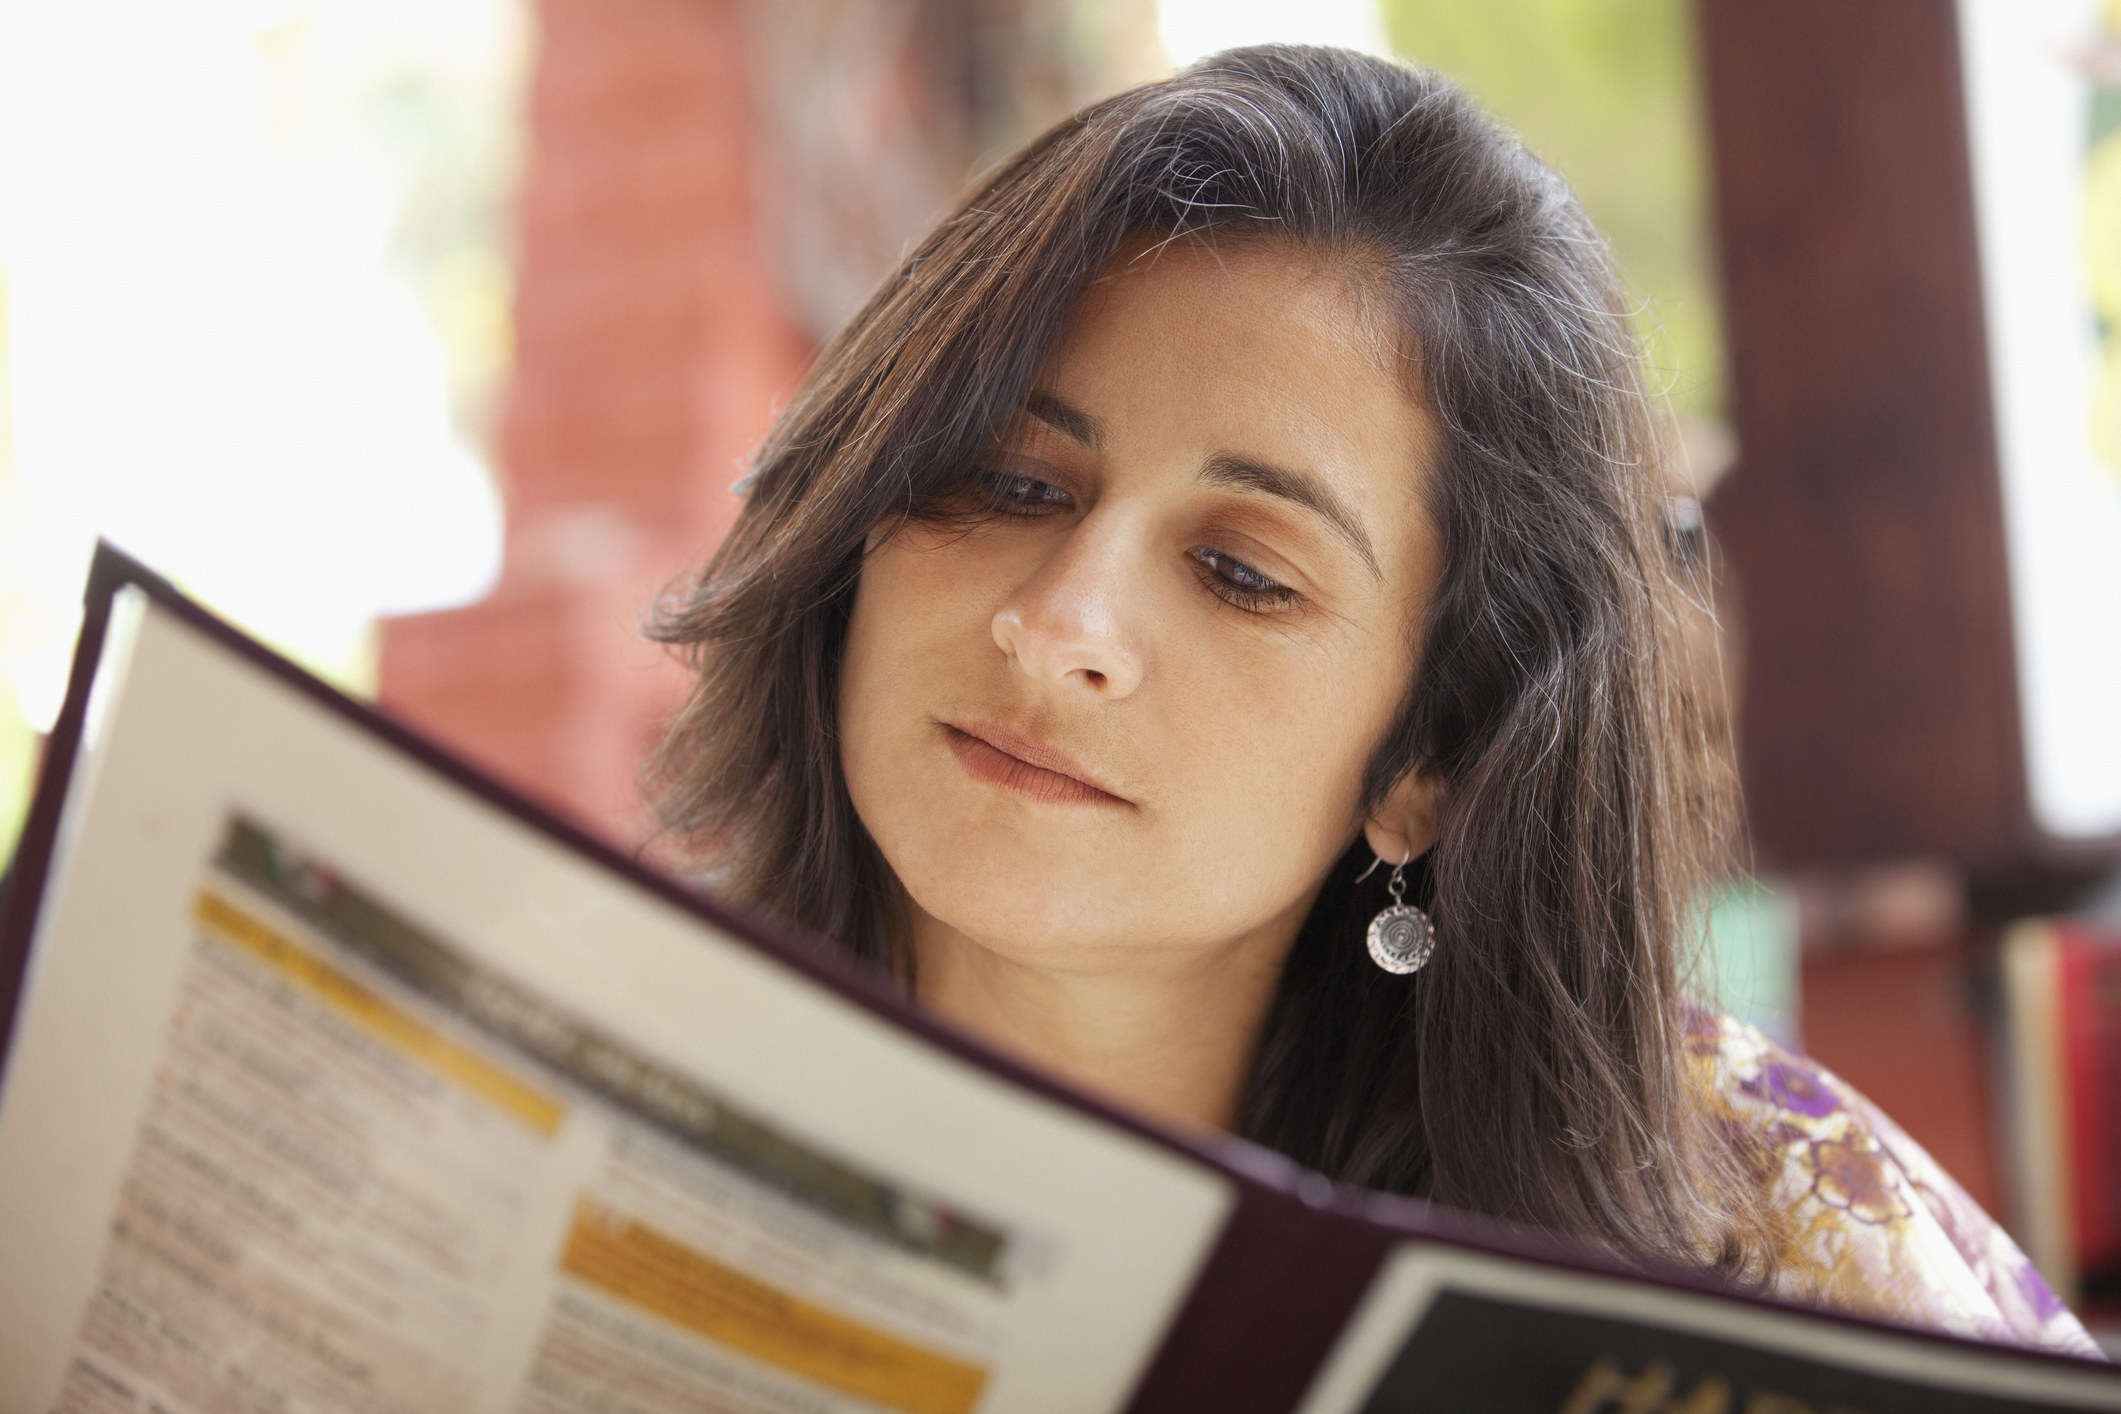 A woman looking at a menu